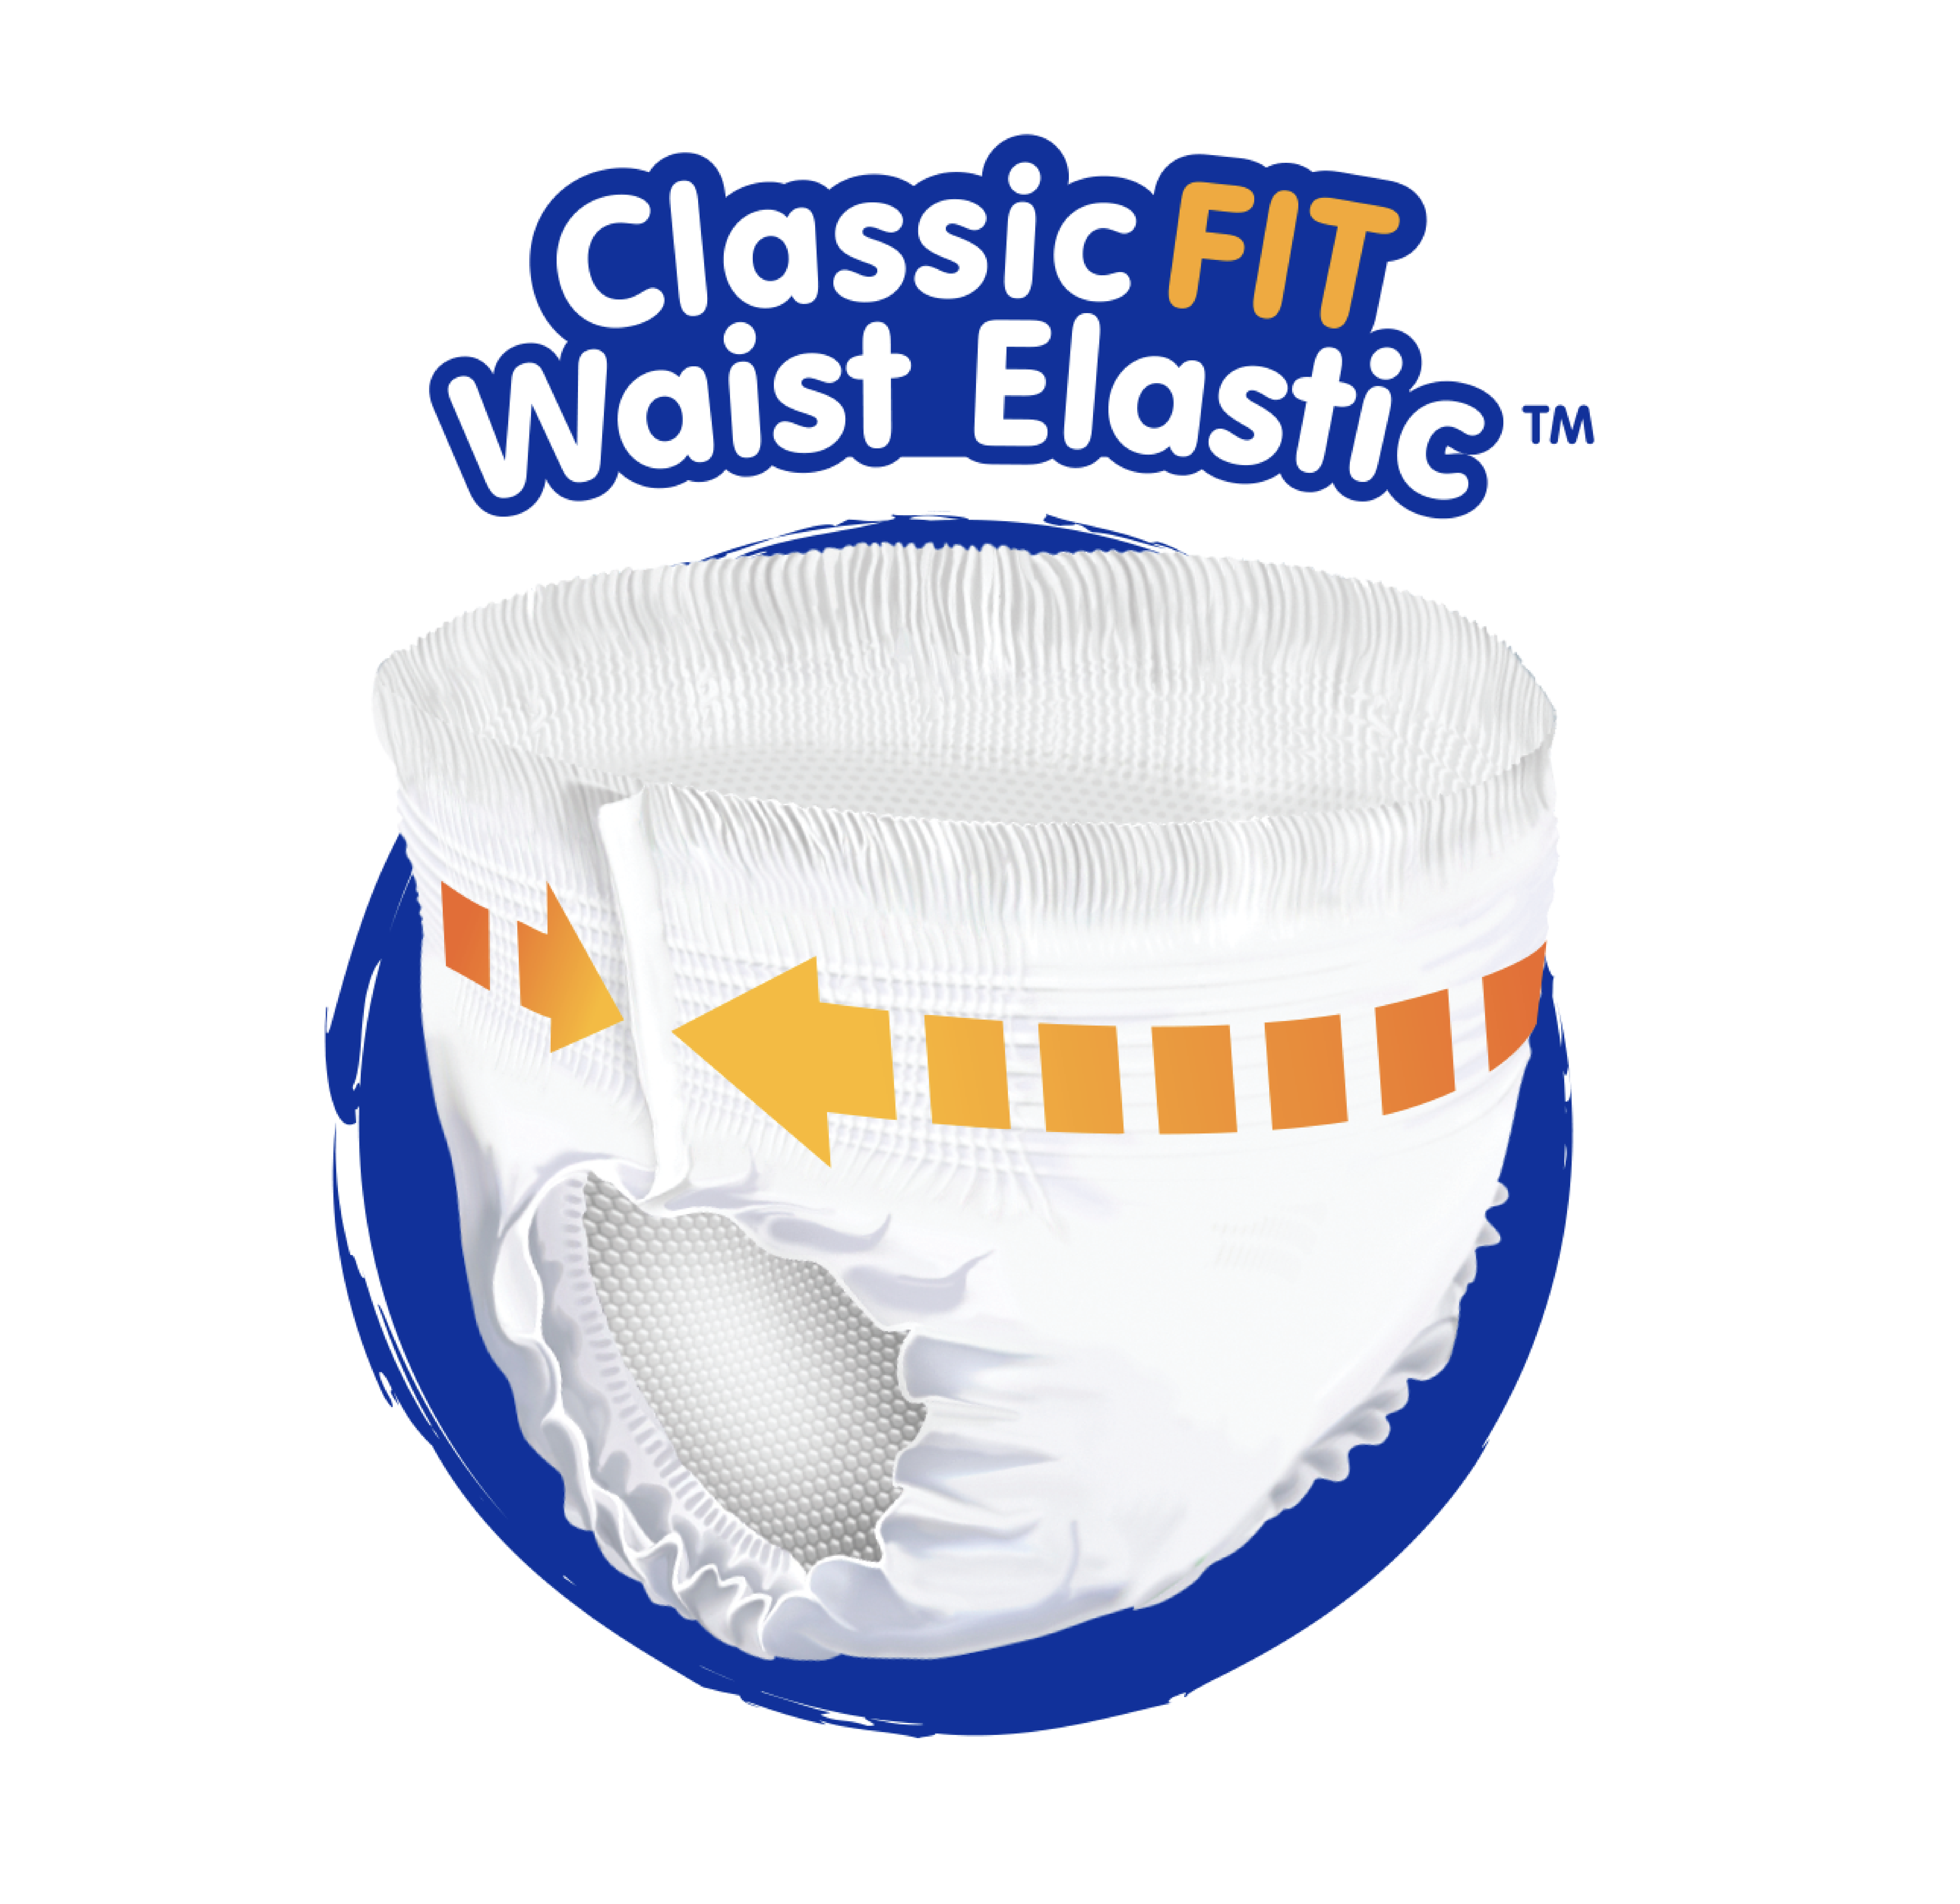 ClassicFIT Waist Elastic